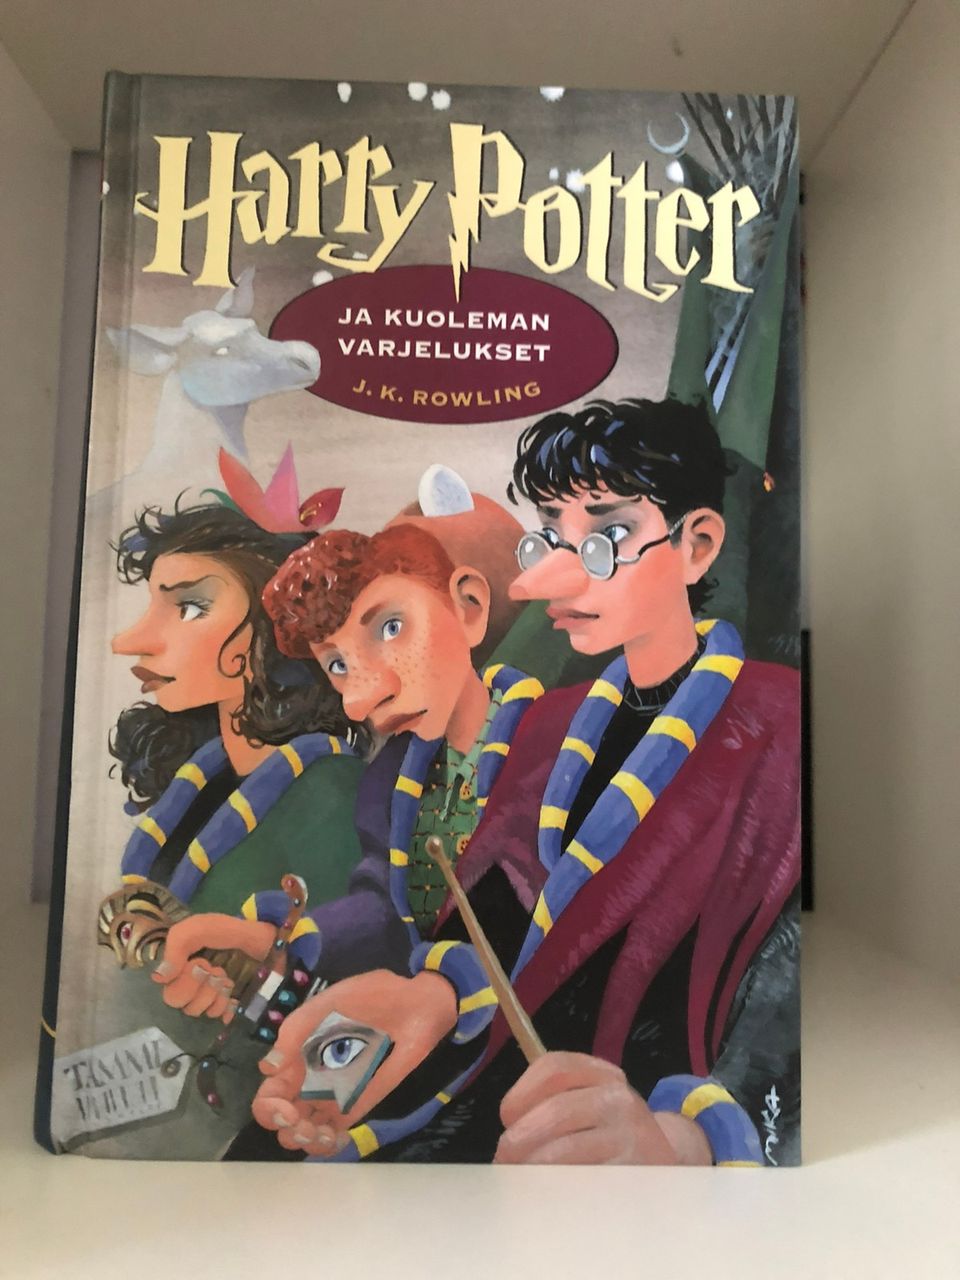 J. K. Rowling - Harry Potter ja Kuoleman varjelukset